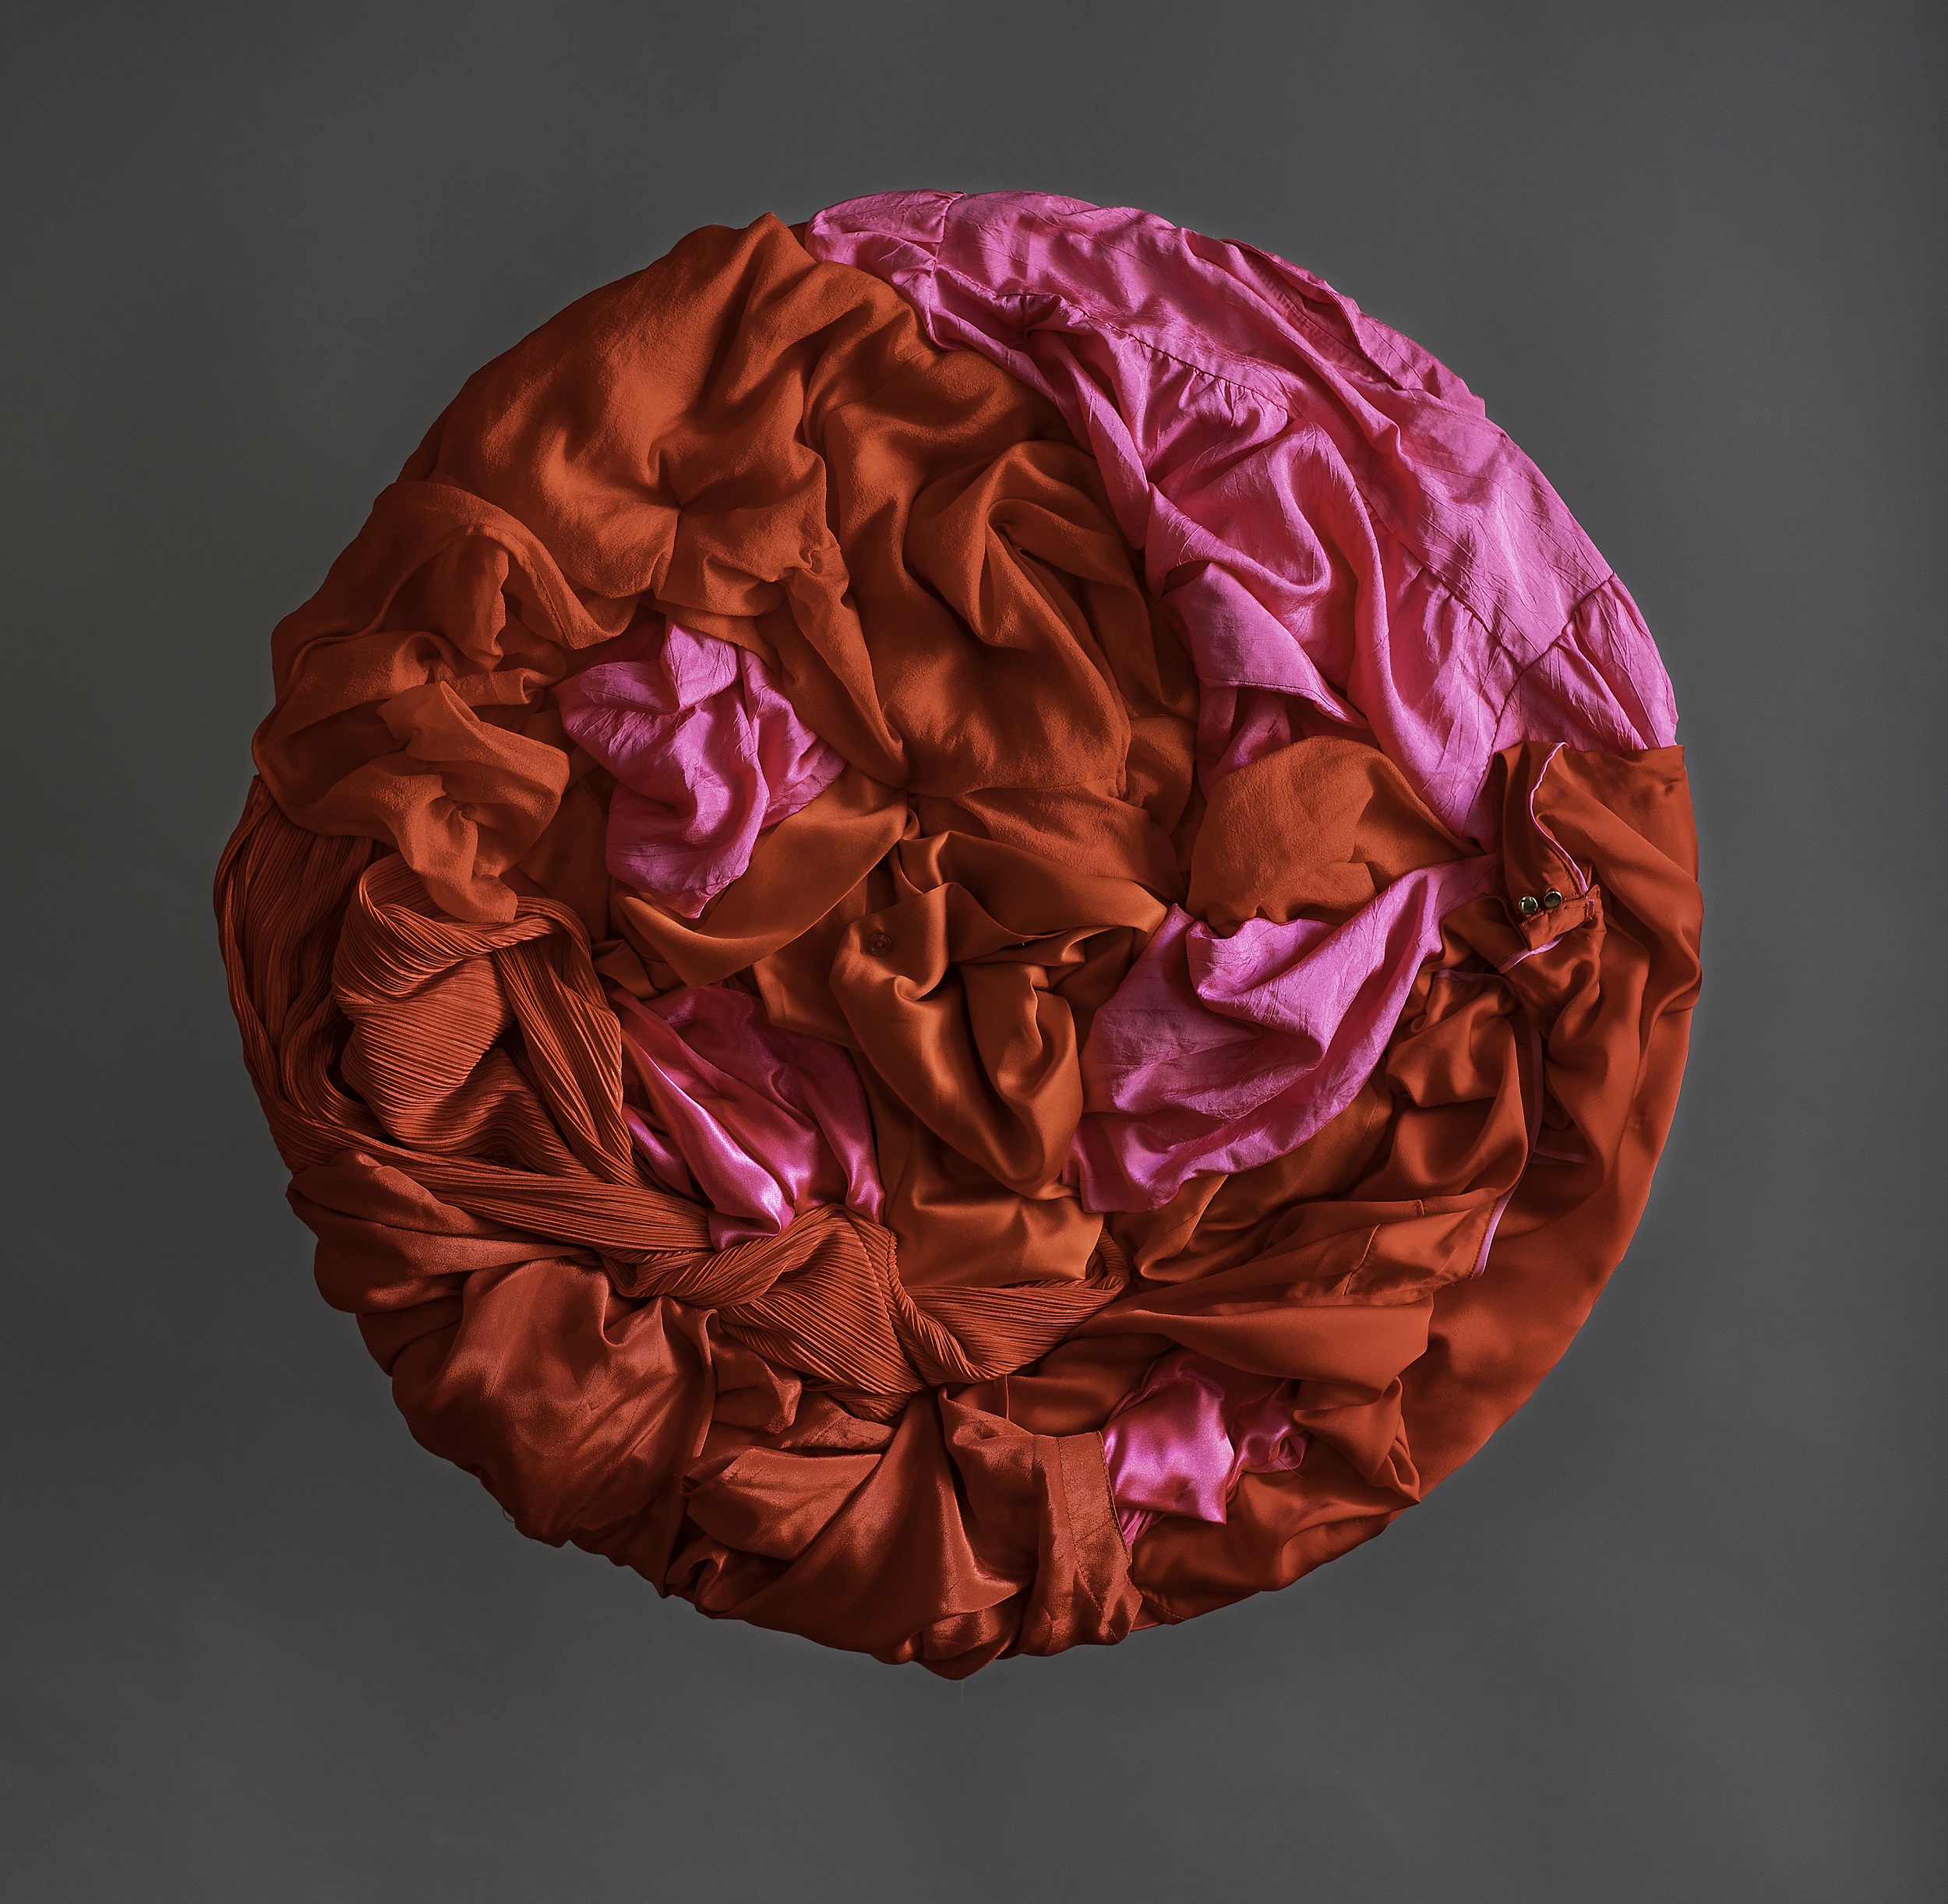 Pyöreä, punainen tekstiilitaideteos, tehty kierrätetyistä vaatteista. Taiteilijan nimi: Virpi Vesanen-Laukkanen